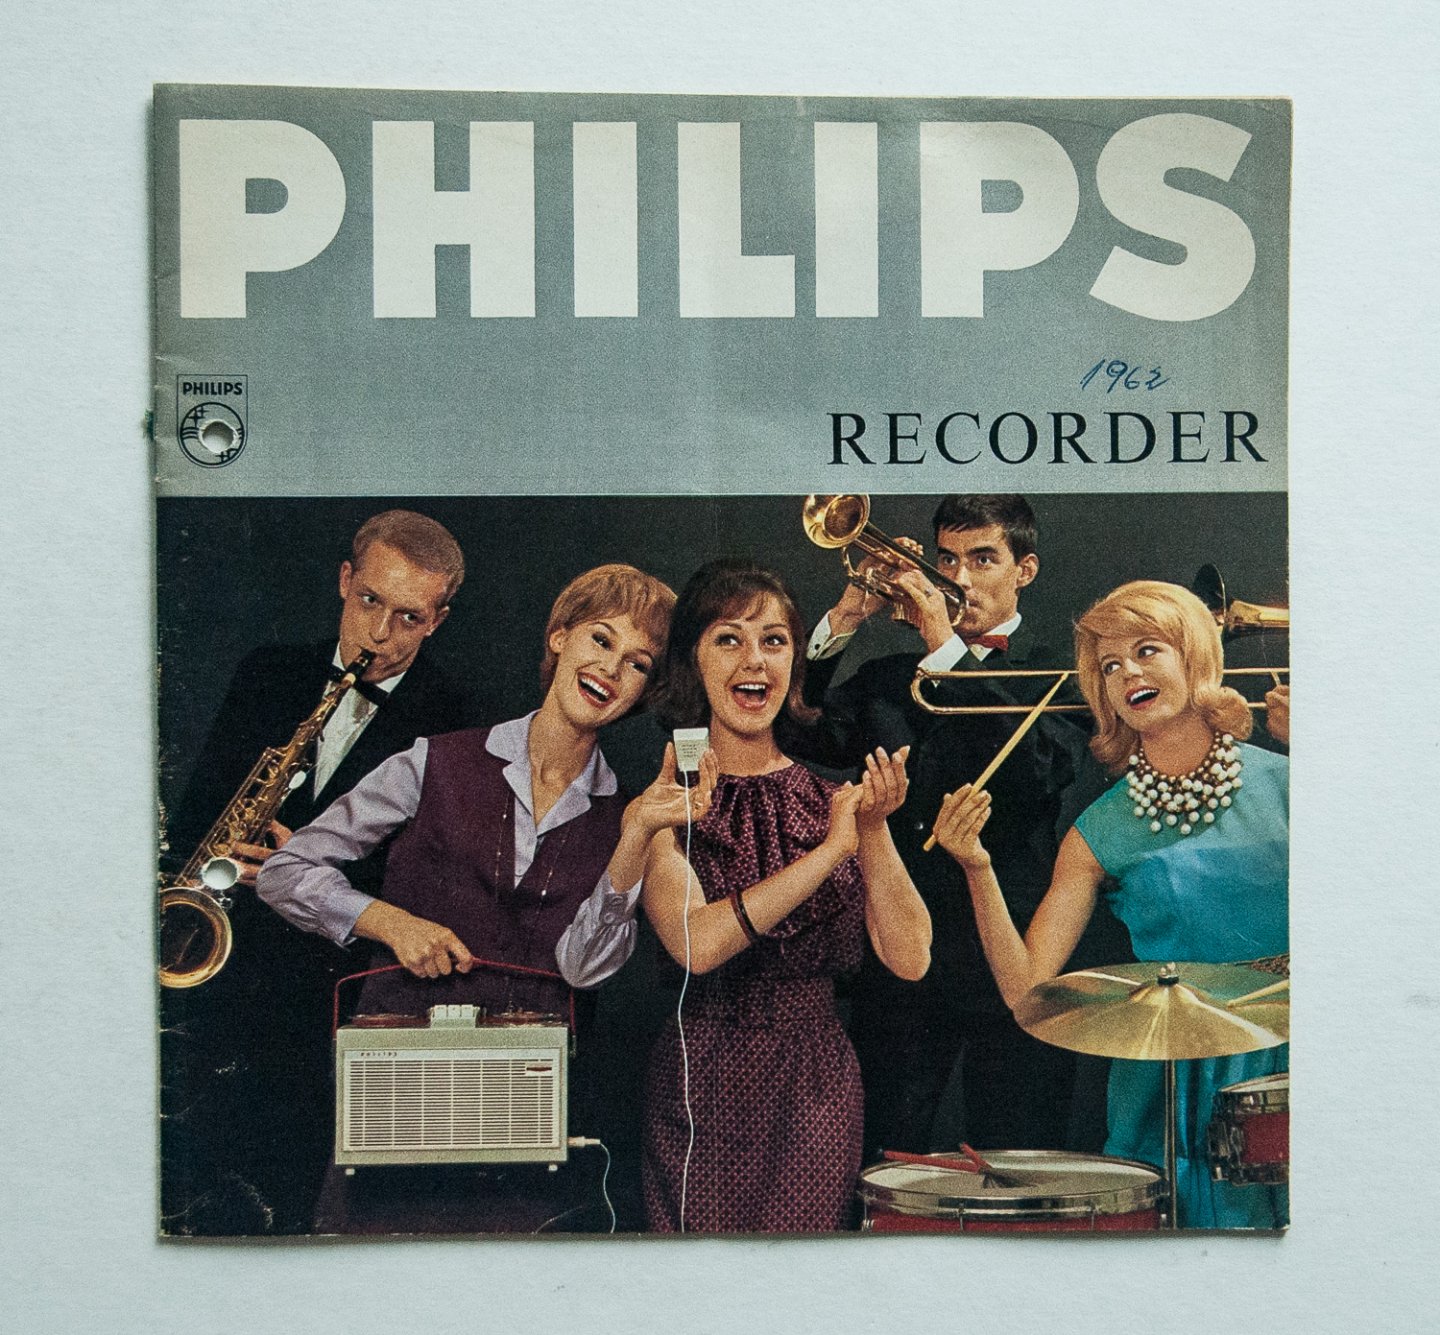 Philips Gloeilampenfabrieken Nederland n.v., Eindhoven - Philips Recorder